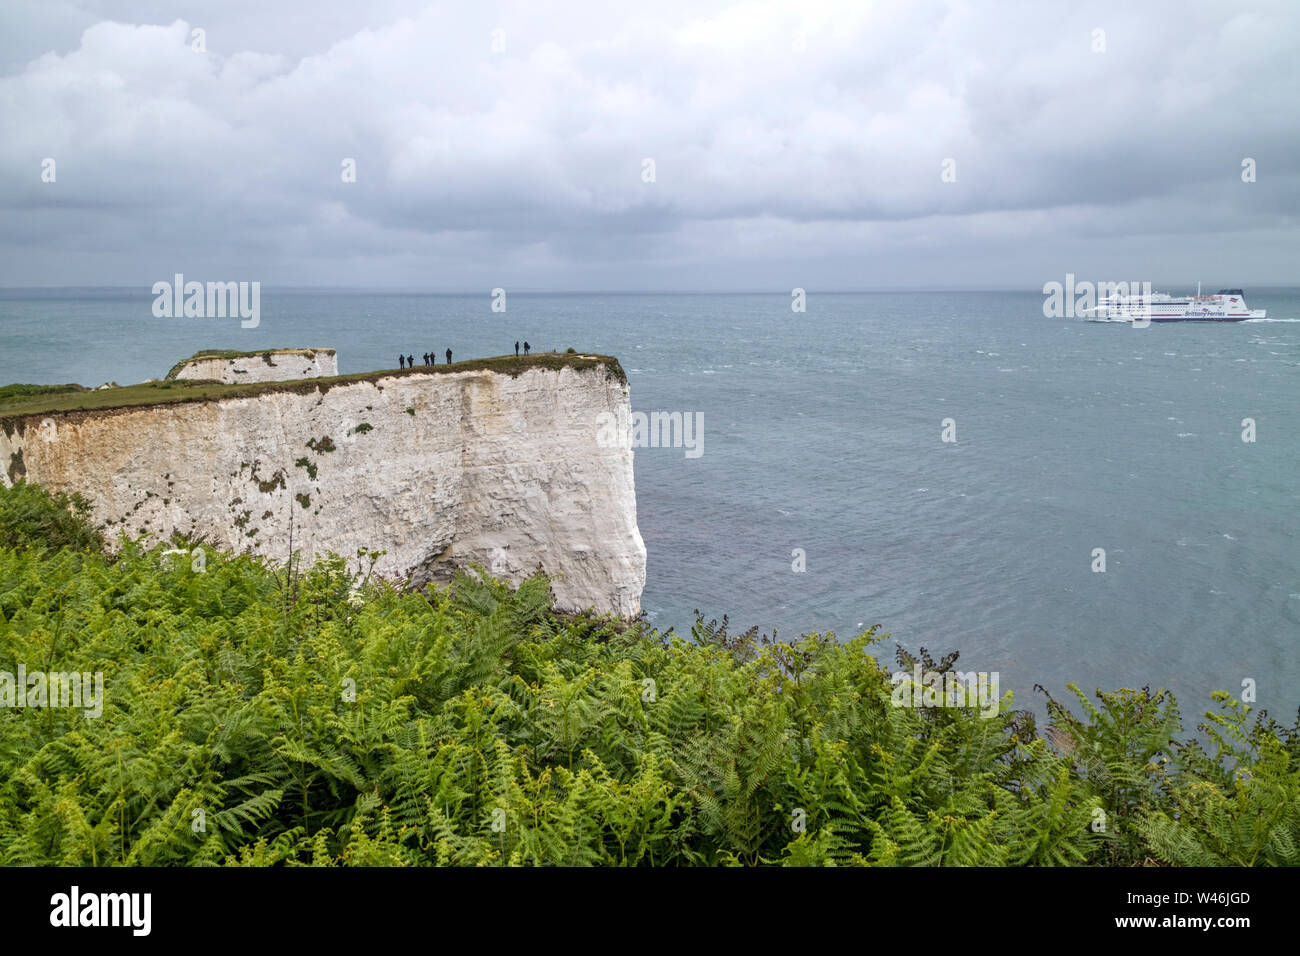 Falaises de craie de Ballard sur la côte du Dorset, Angleterre, RU Banque D'Images